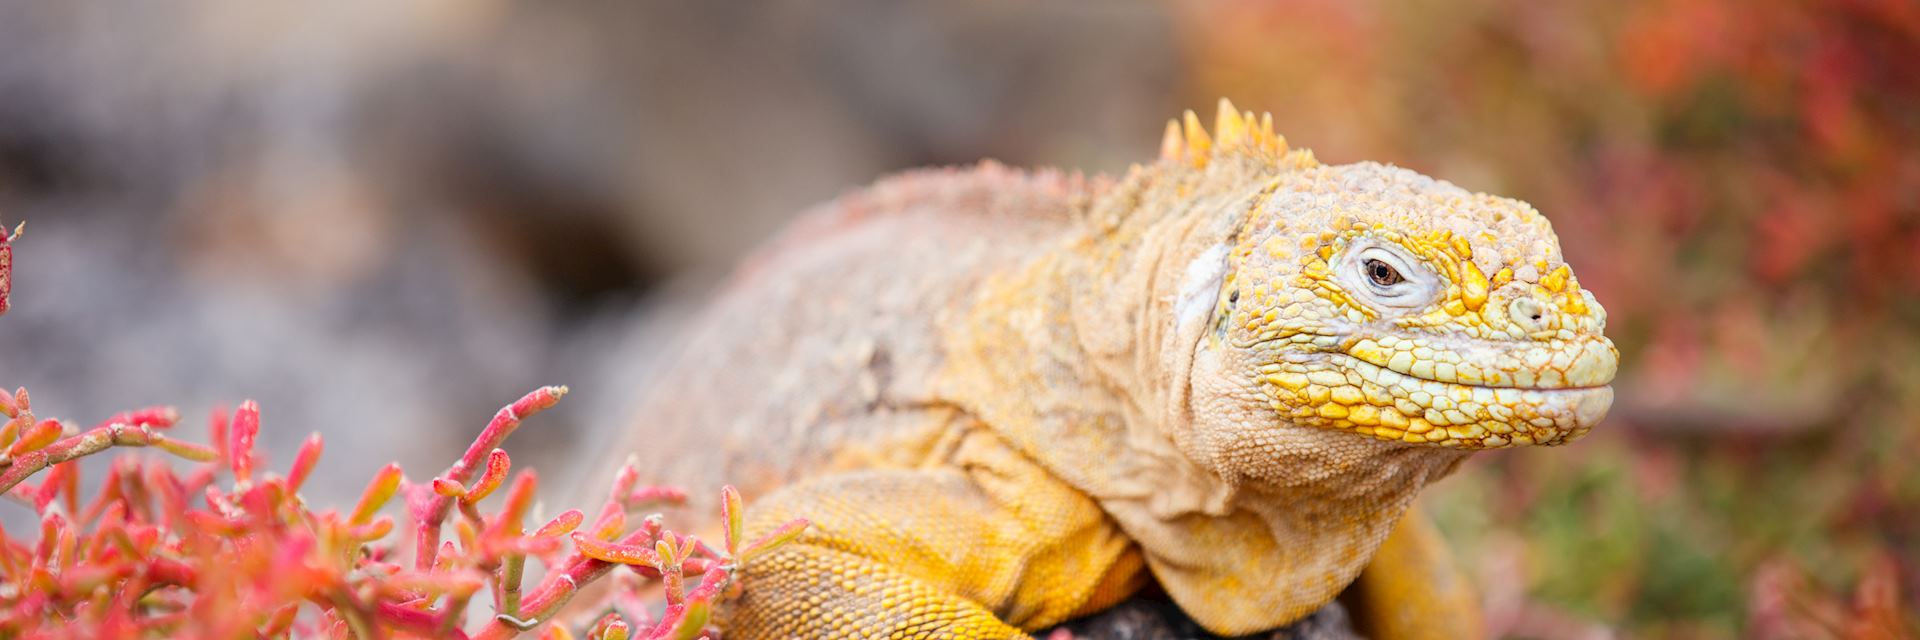 Land iguana, the Galapagos Islands